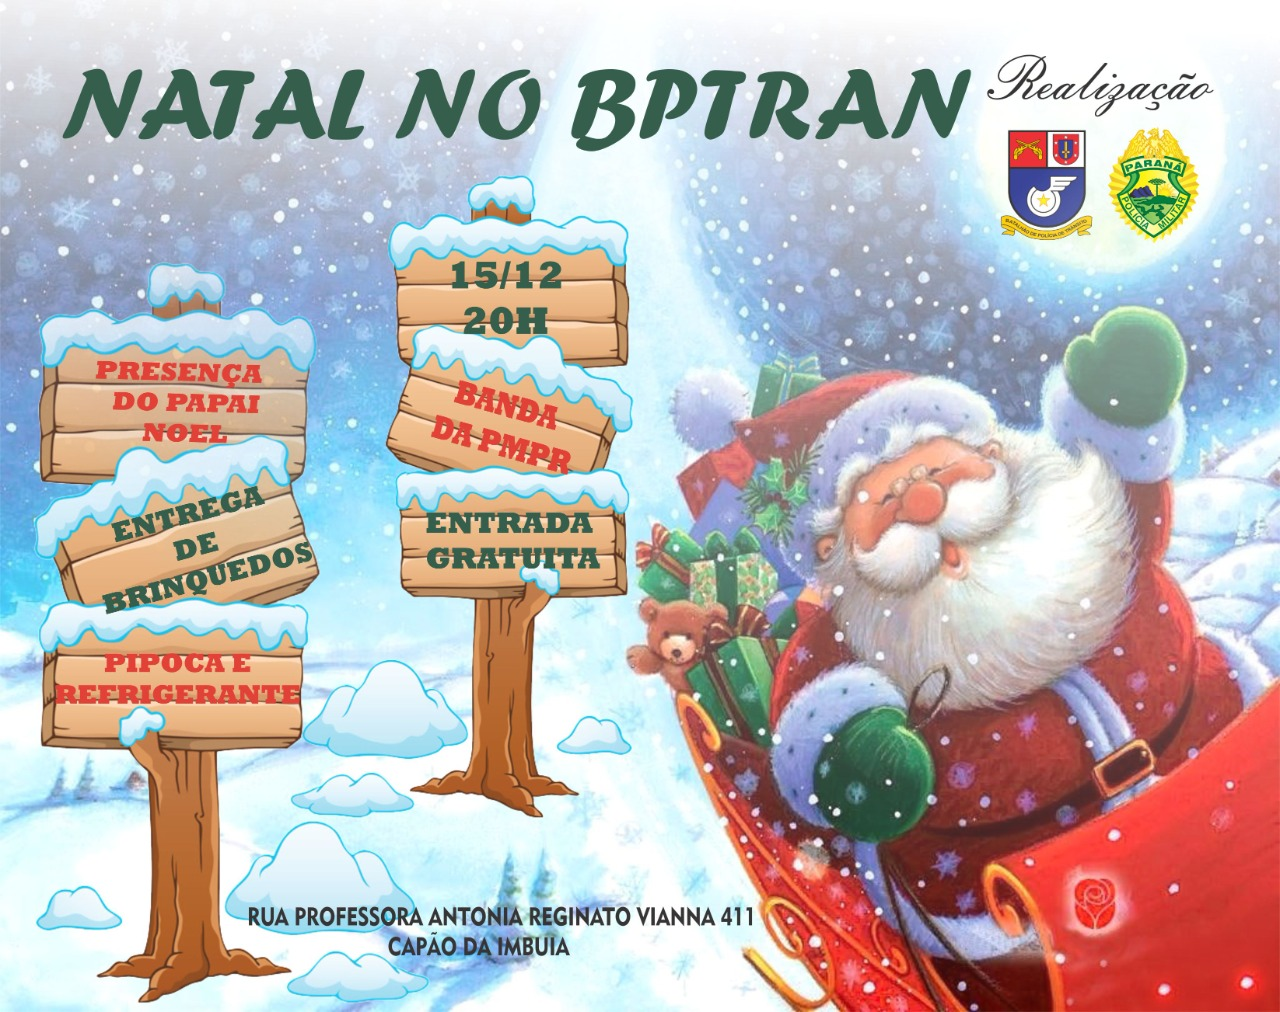 BPTran realizará a Tocata de Natal no dia 15 de dezembro com entrega de  presentes para as crianças | POLÍCIA MILITAR DO PARANÁ